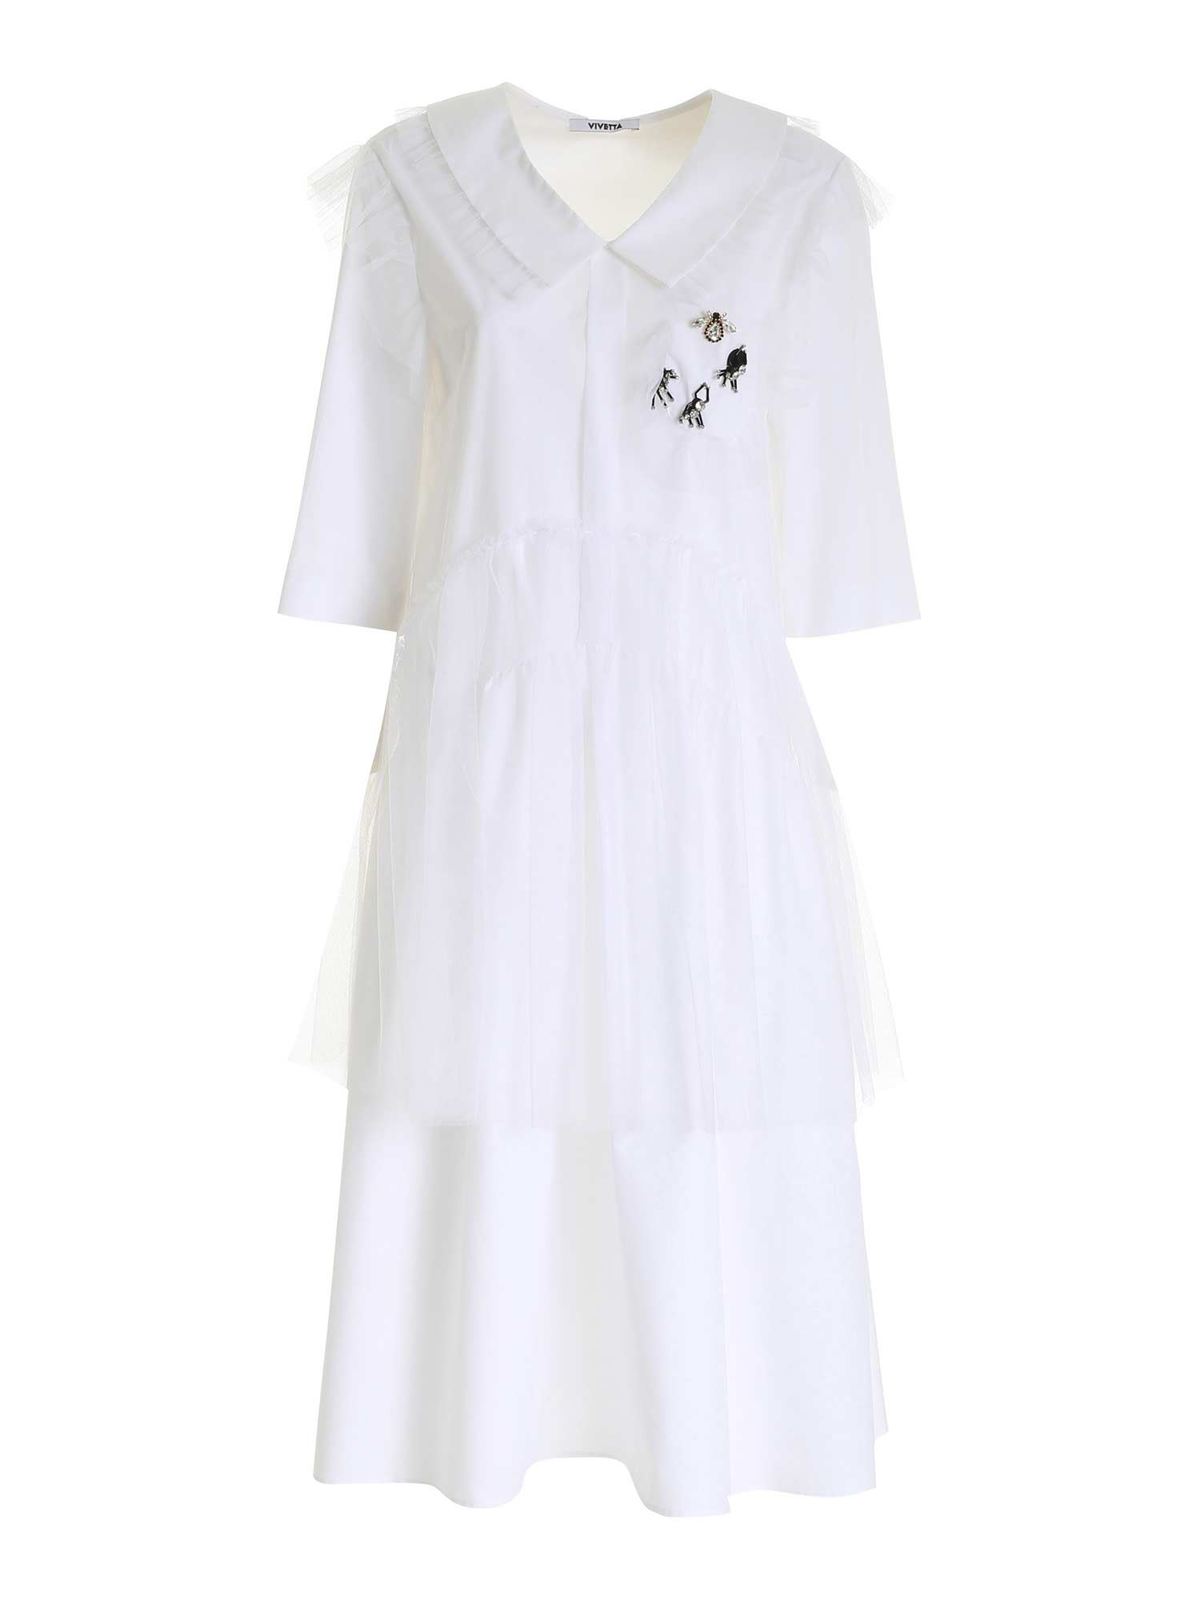 Vivetta Details Dress In White